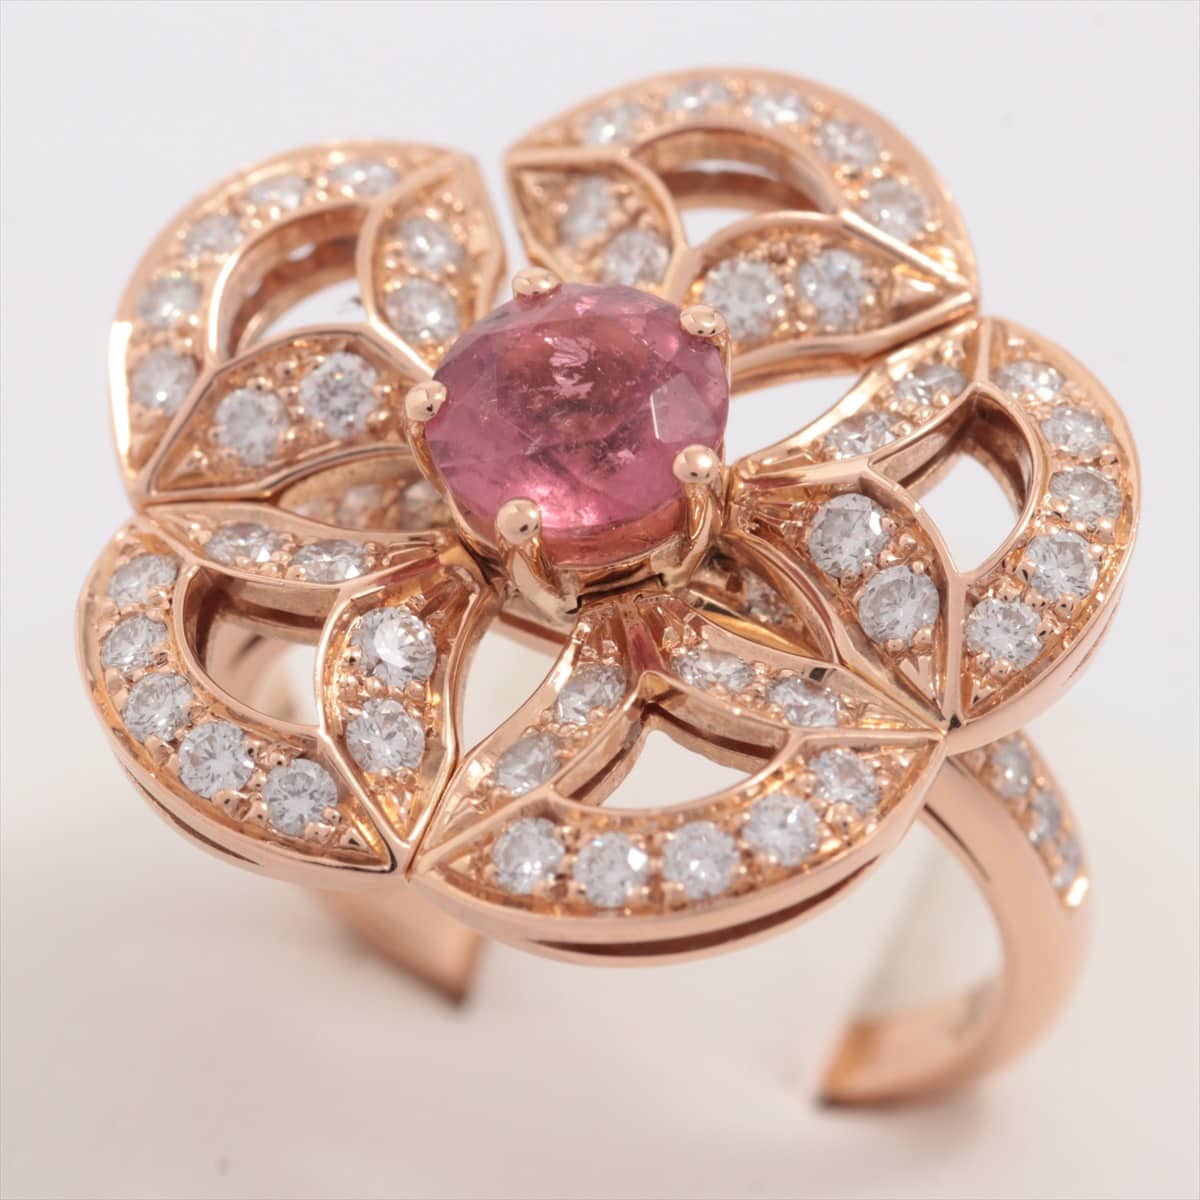 Bvlgari Diva Dream Pink tourmaline diamond rings 750(PG) 7.5g